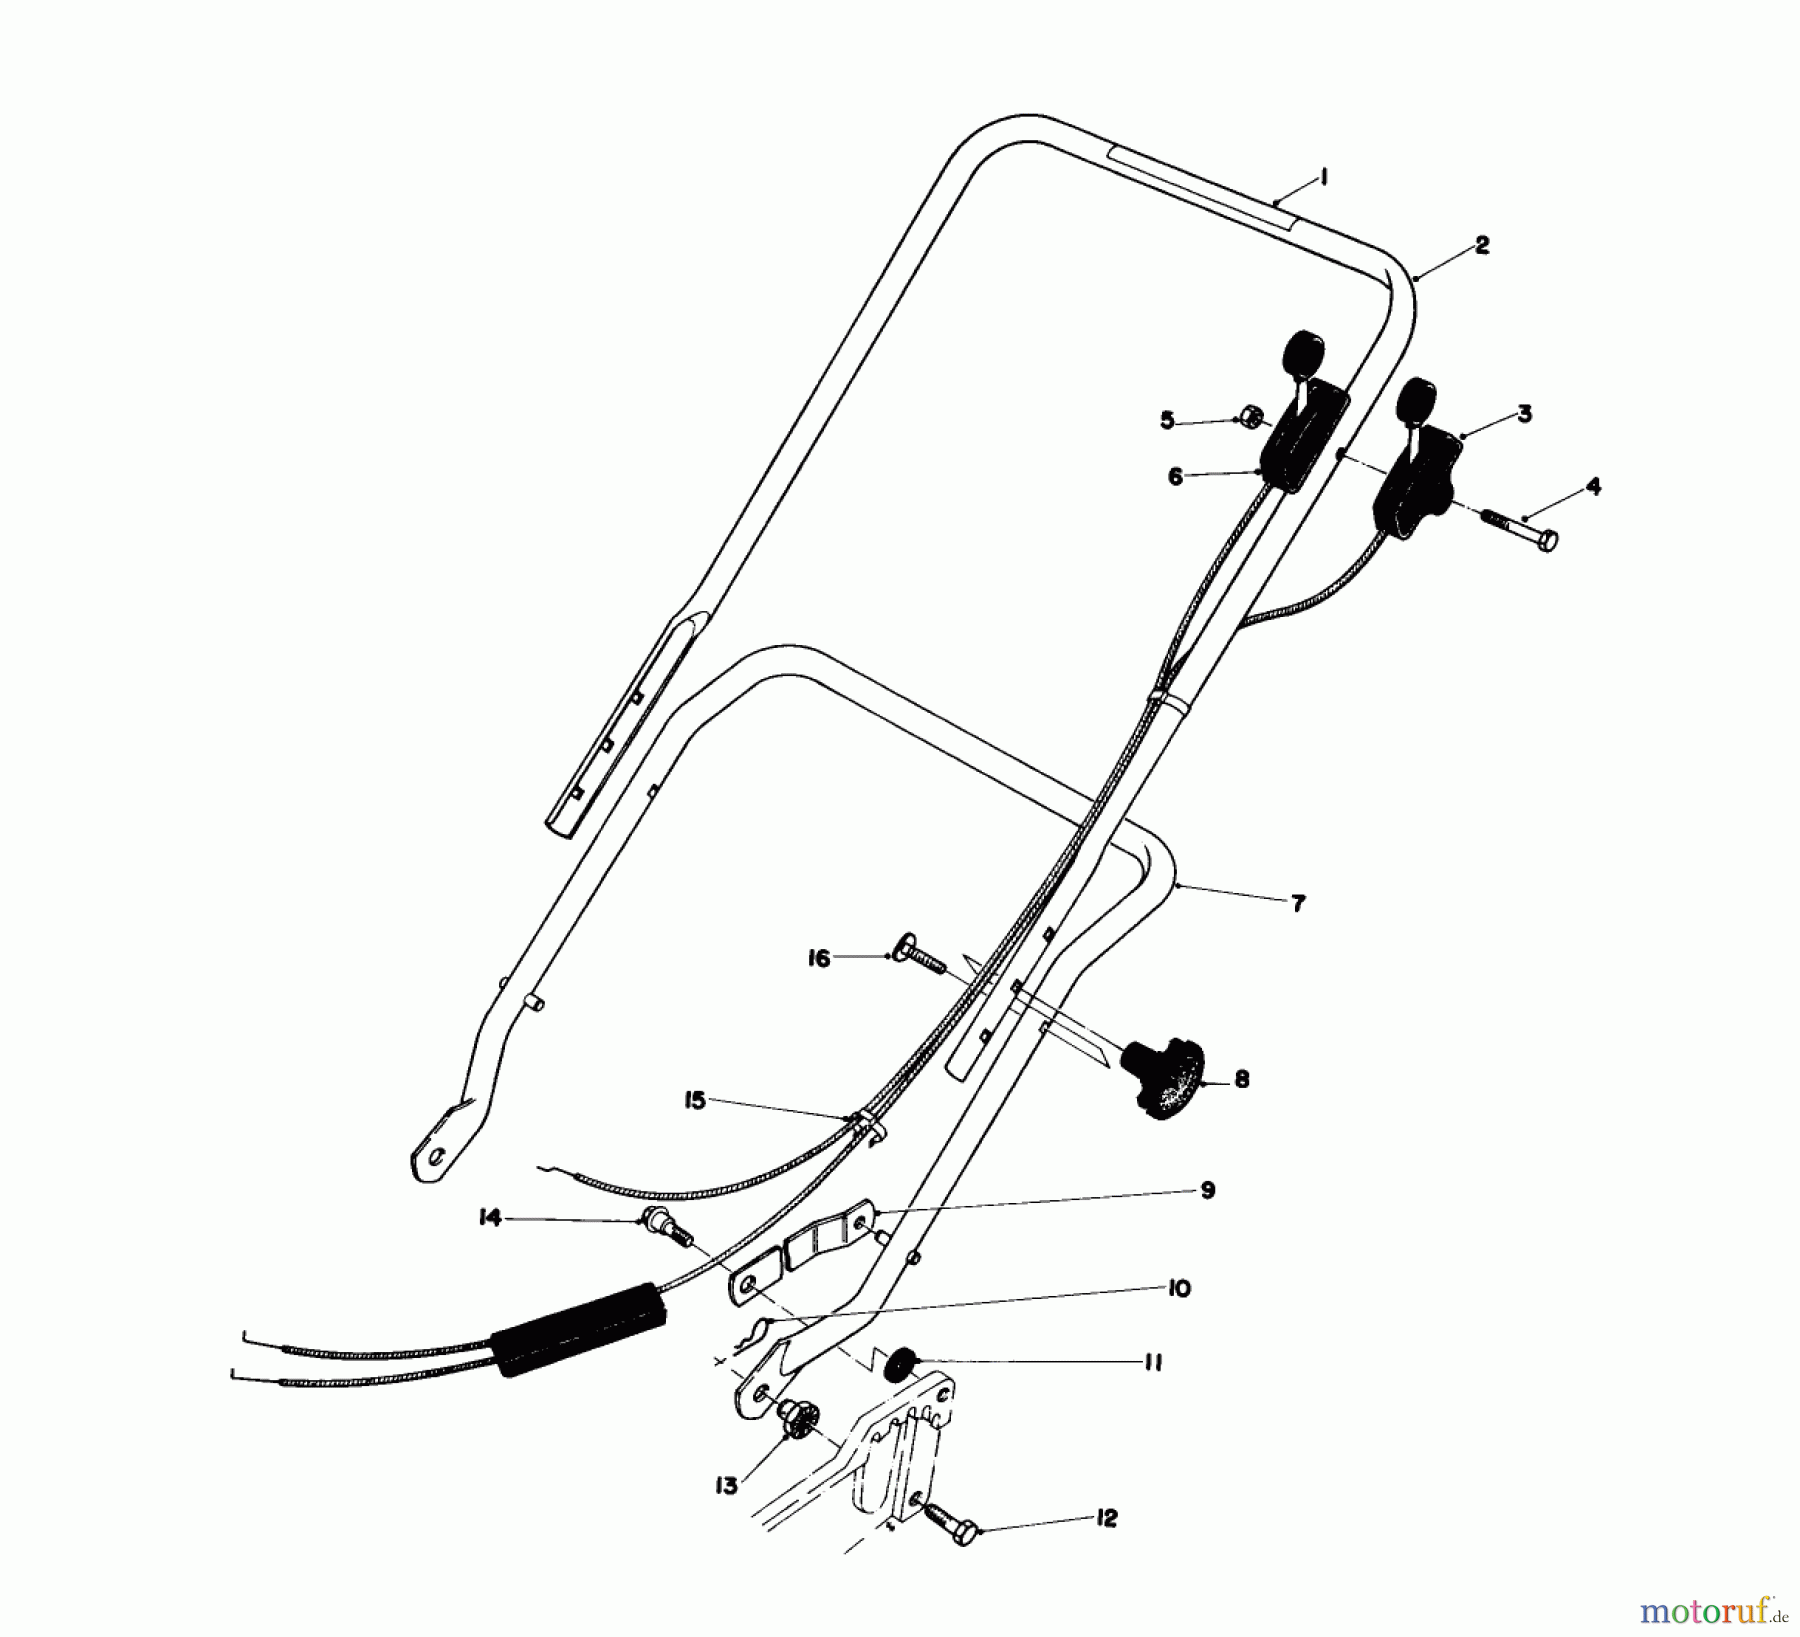  Toro Neu Mowers, Walk-Behind Seite 1 20755 - Toro Lawnmower, 1979 (9000001-9999999) HANDLE ASSEMBLY